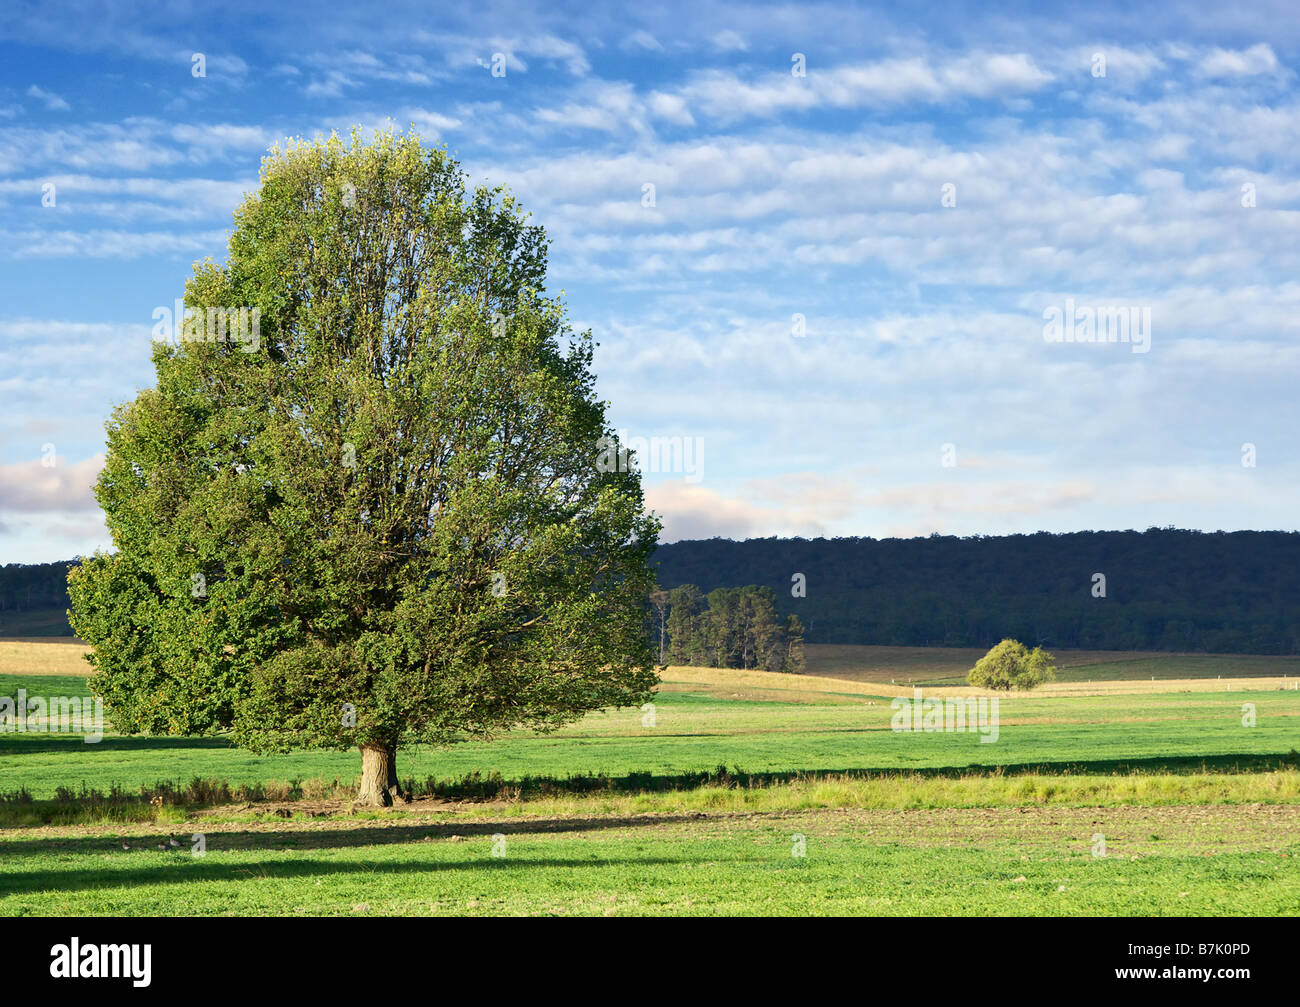 landscape of a single green bushy tree in green field Stock Photo